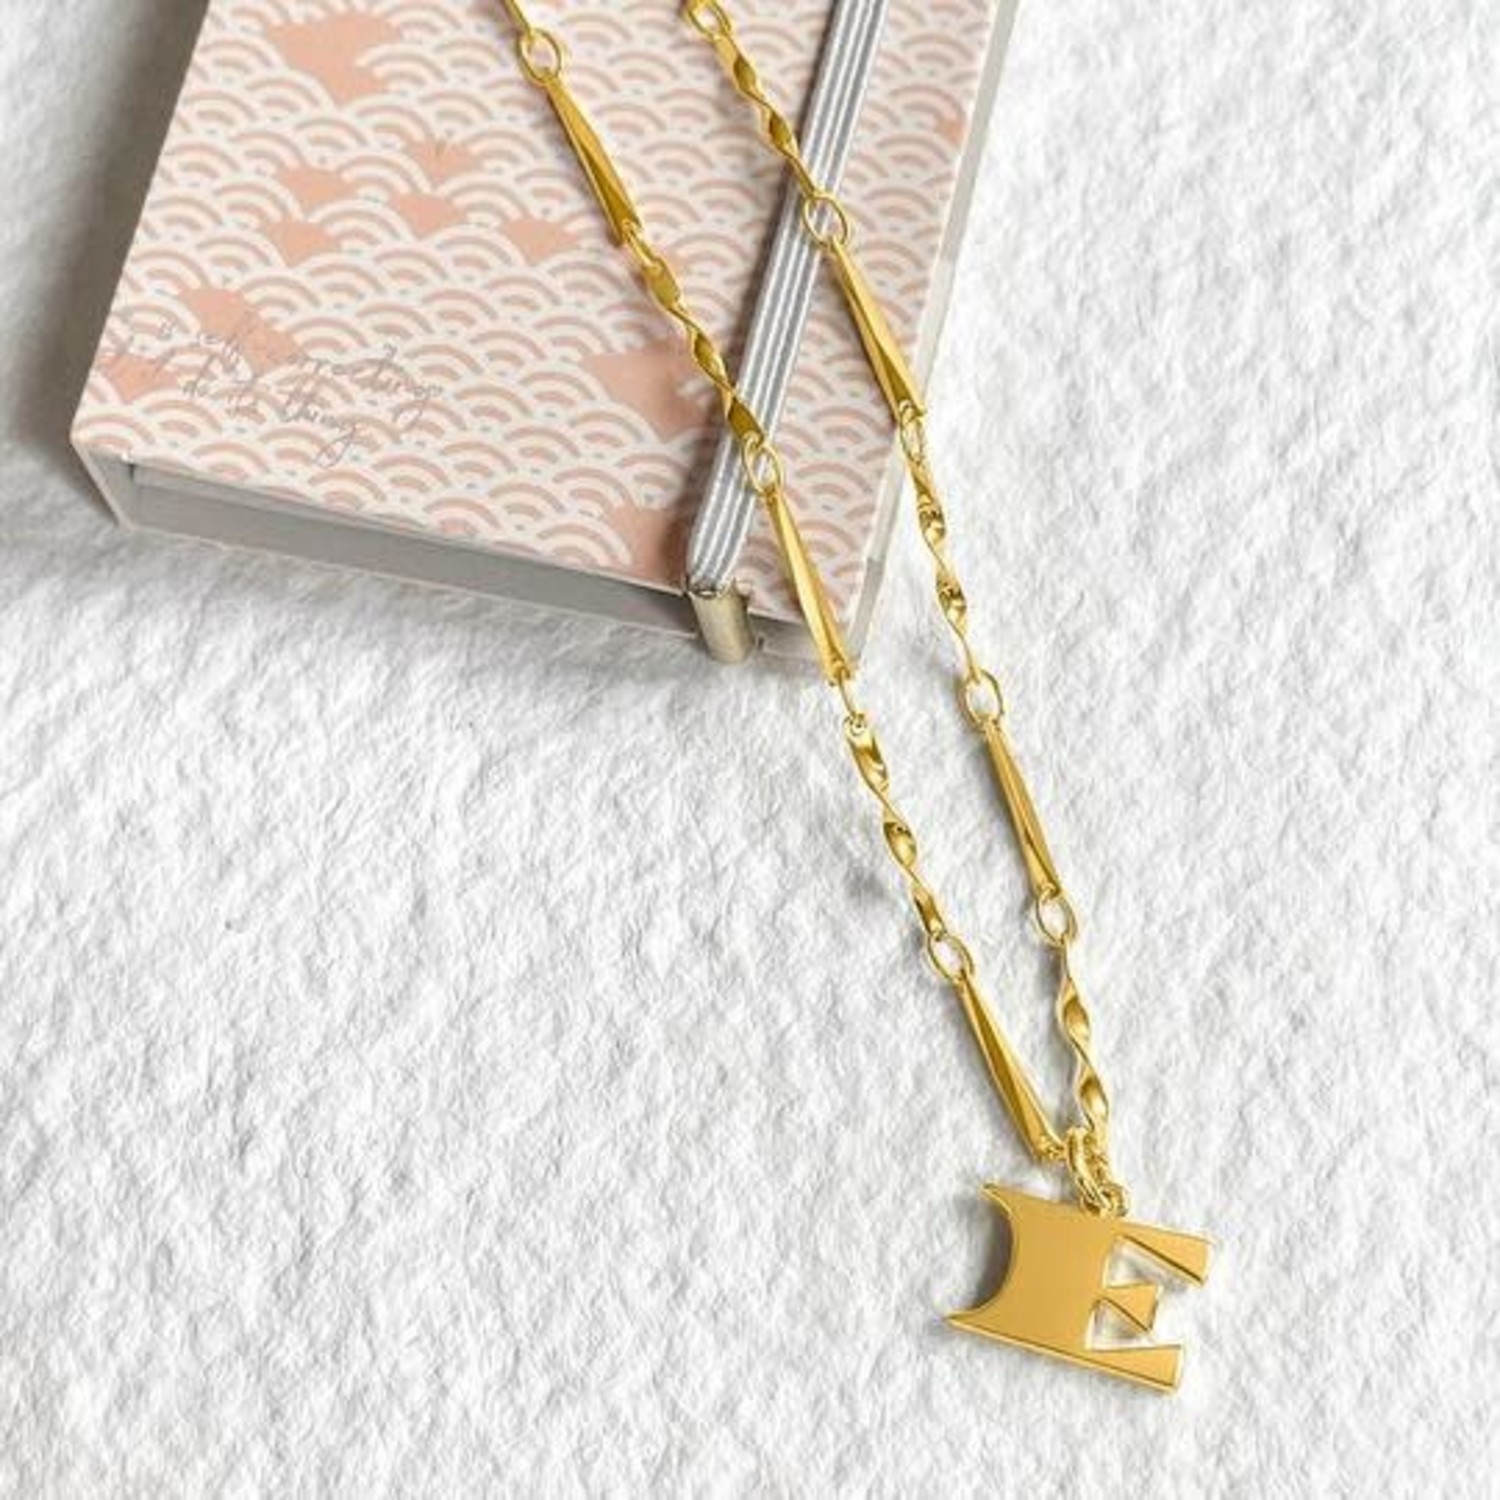 Louis Vuitton Letter Necklaces